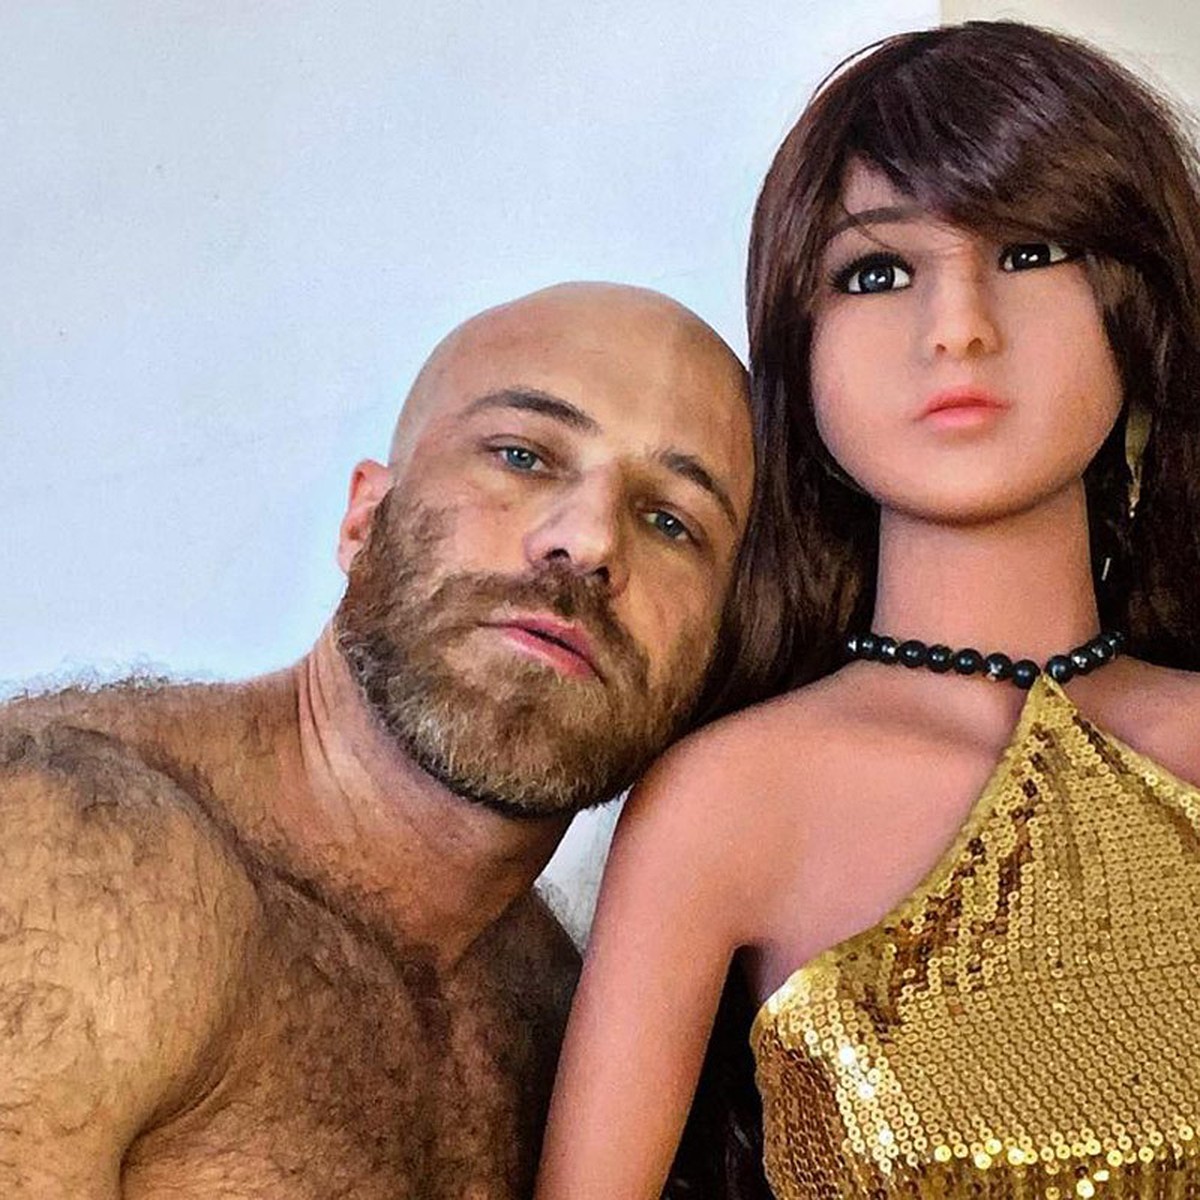 Секс мужчины с надувной резиновой куклой и девушкой